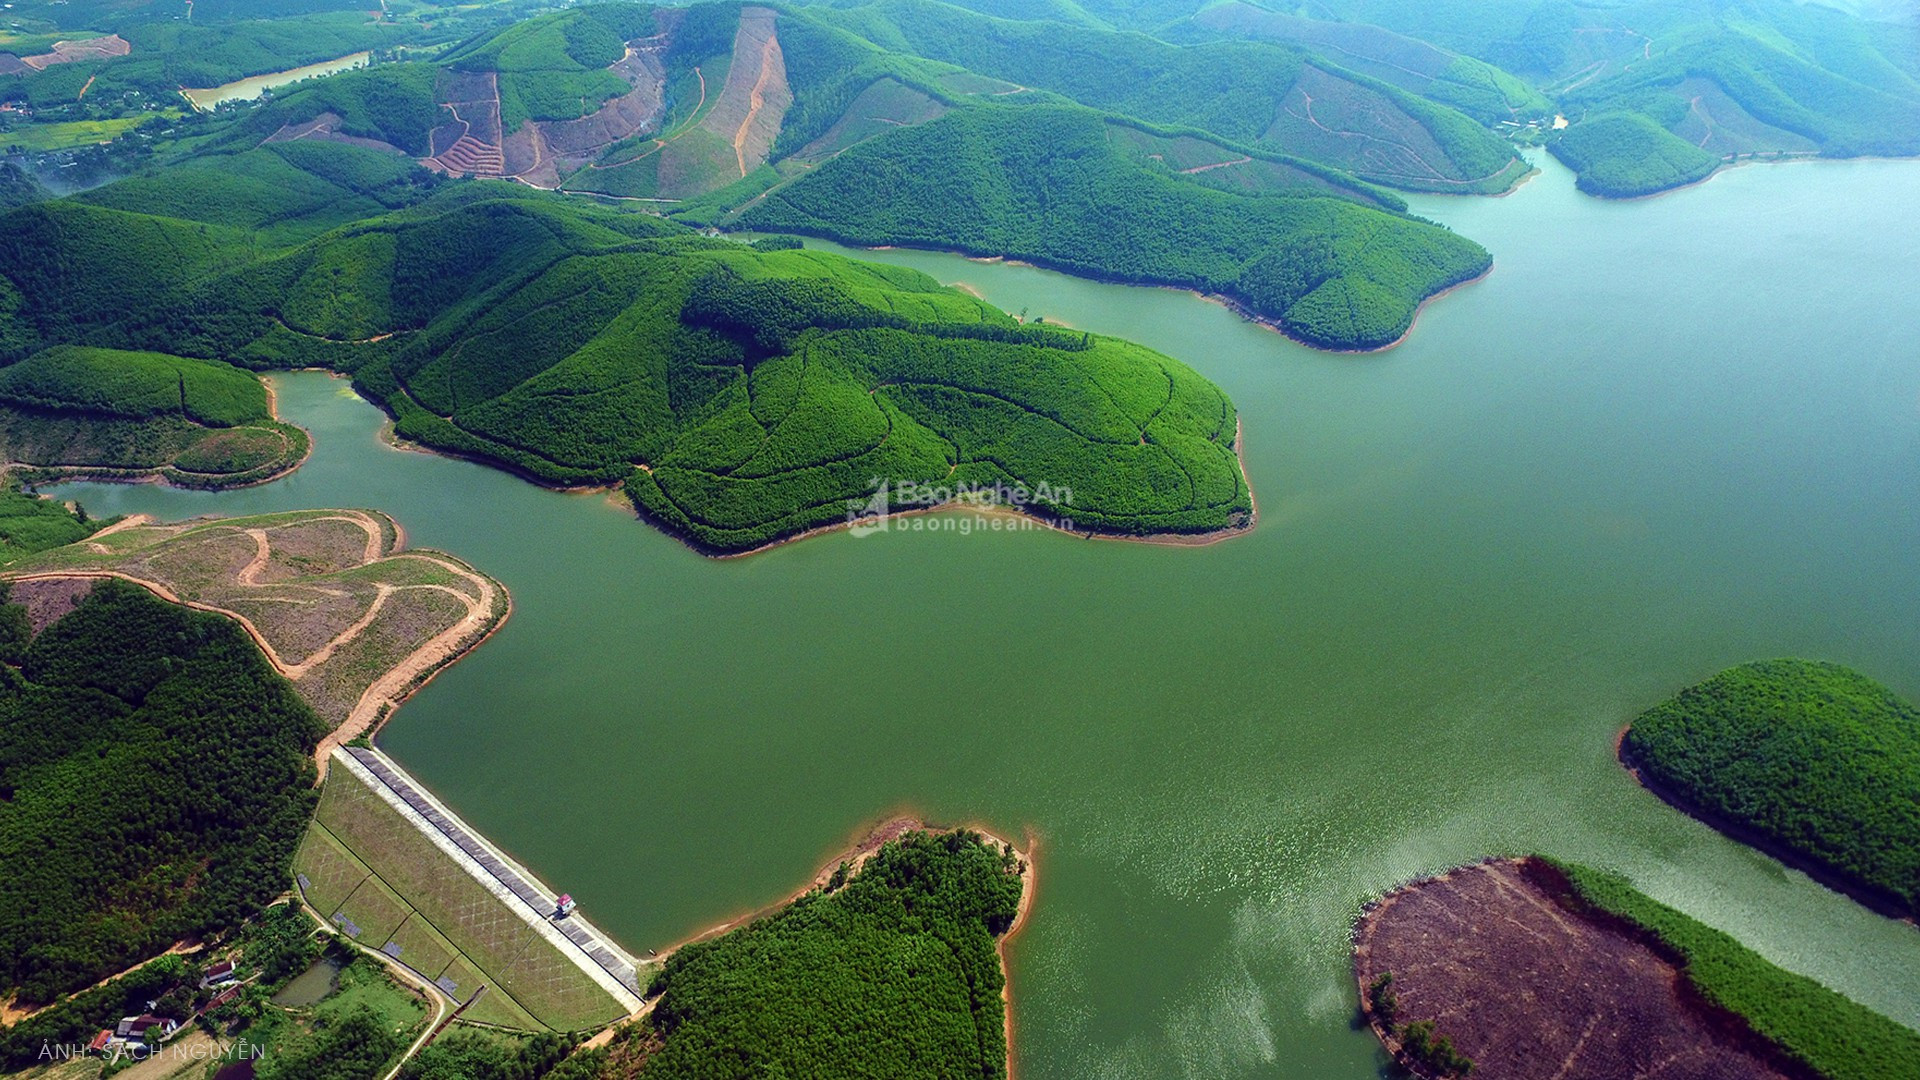 Đập Vệ Vừng là hồ đập lớn nhất huyện lúa Yên Thành, với diện tích mặt nước 720 ha, trữ lượng 18 triệu m3 nước. Đây là niềm tự hào của quê lúa Yên Thành, là điểm đến của nhiều du khách. Ảnh tư liệu: Sách Nguyễn.